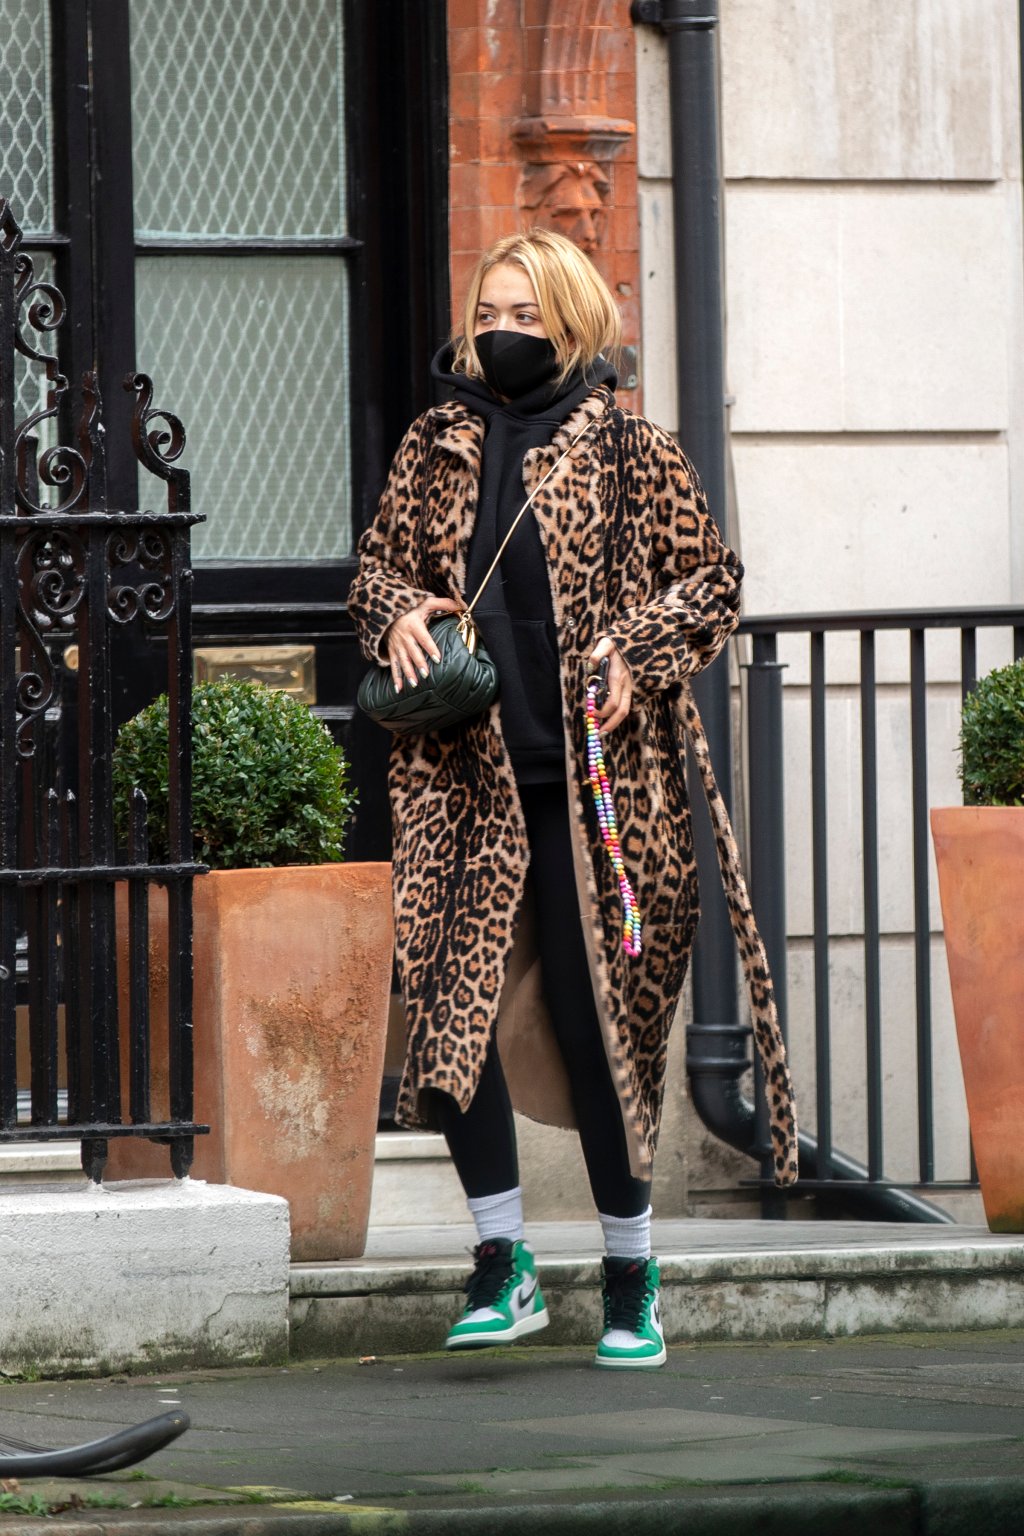 Rita Ora usando look com moletom preto, calça legging preta, tênis verde e branco de cano alto, sobretudo com estampa de oncinha e bolsa preta atravessada no ombro. Ela está com máscara de proteção preta, olhando para o lado, em uma pose espontânea.